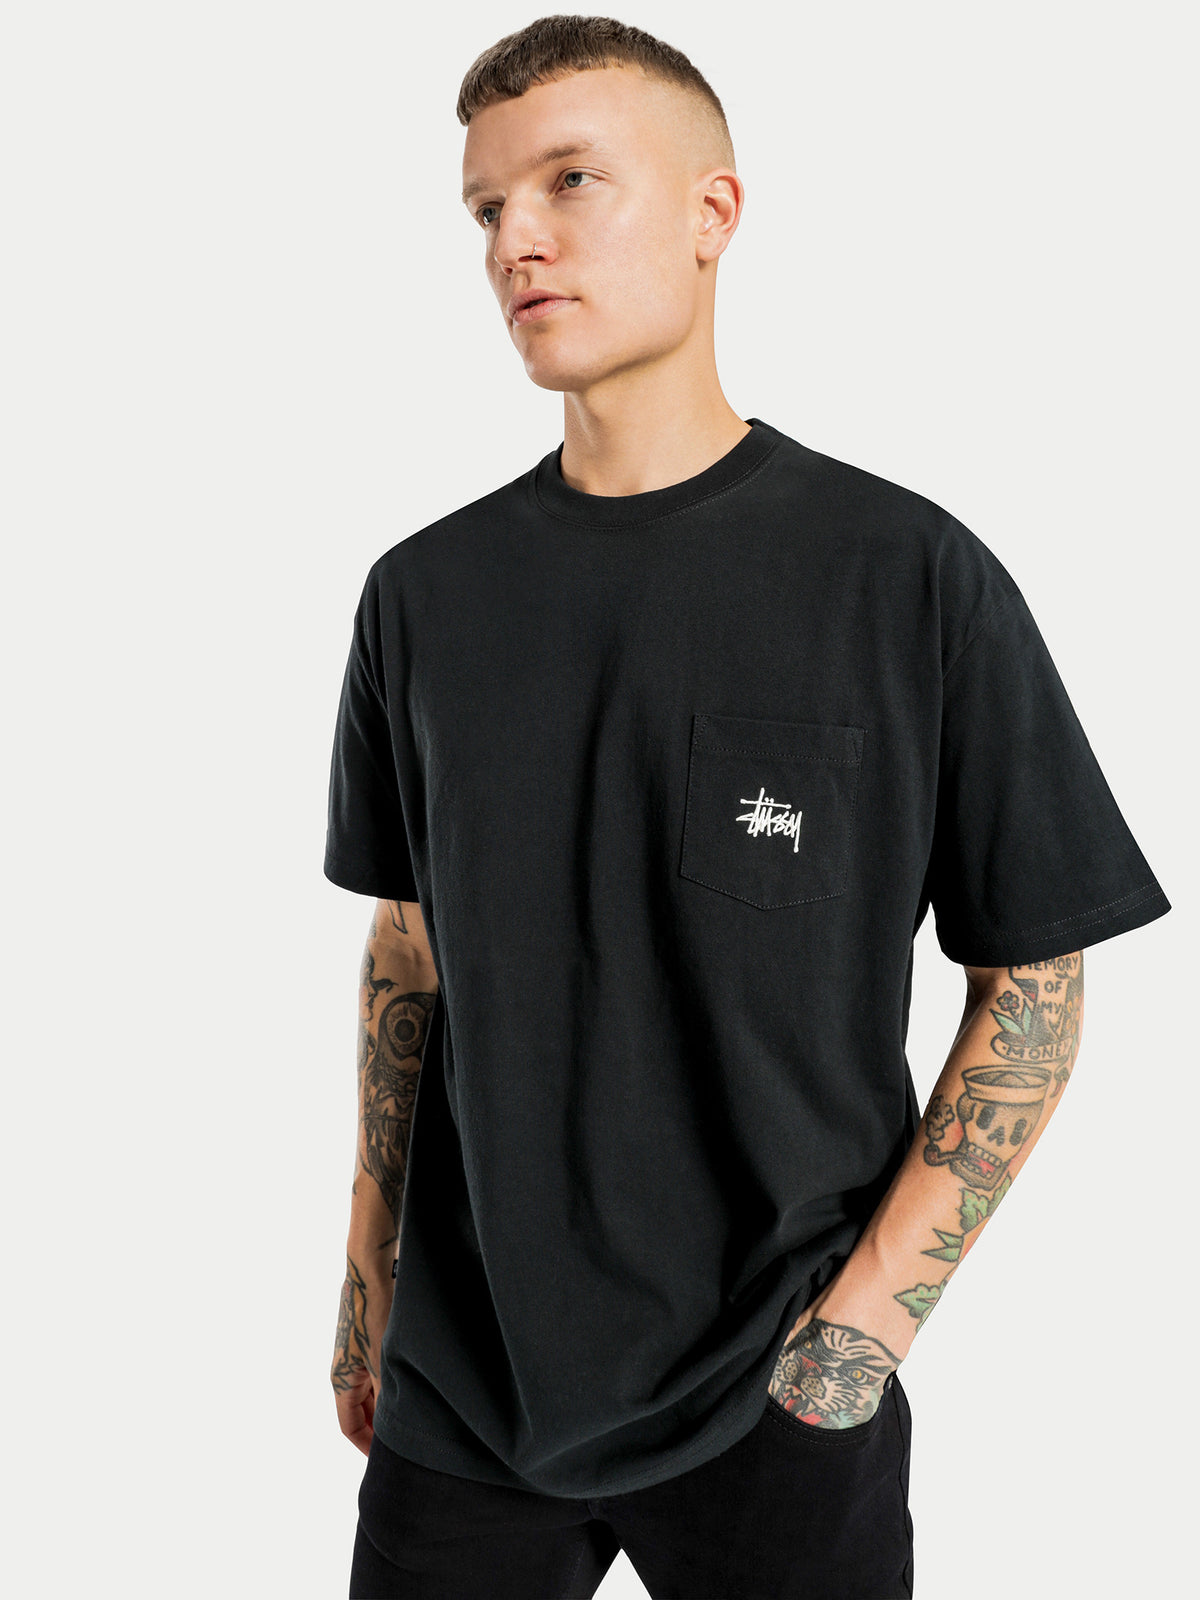 Graffiti Pocket Short Sleeve T-Shirt in Black